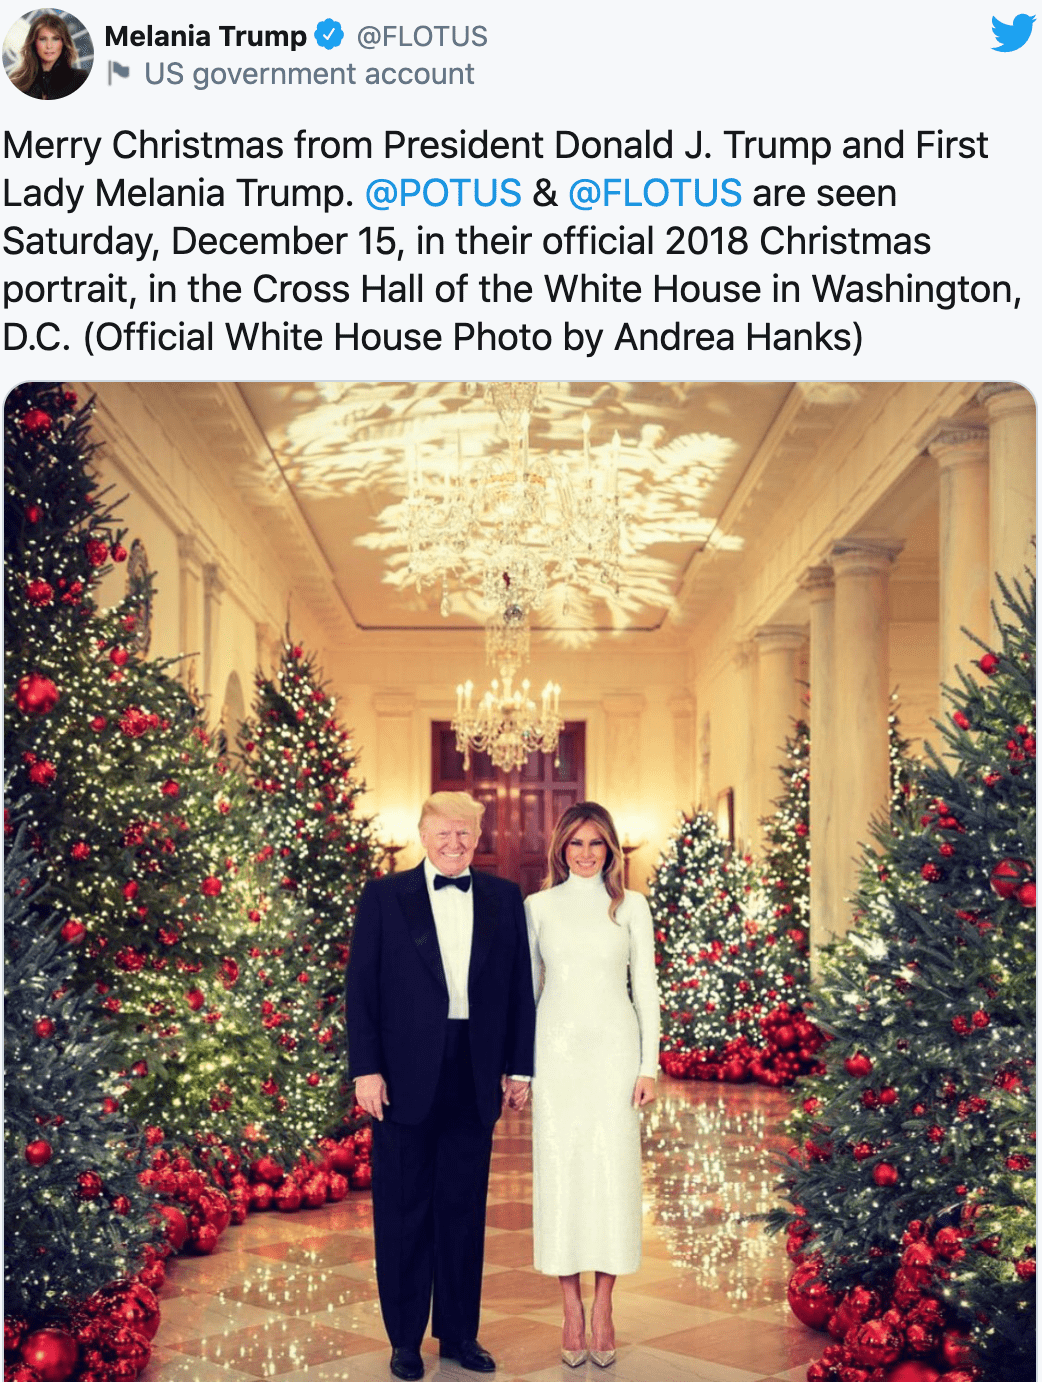 梅拉尼娅在推特上分享2018年的白宫圣诞官方照片